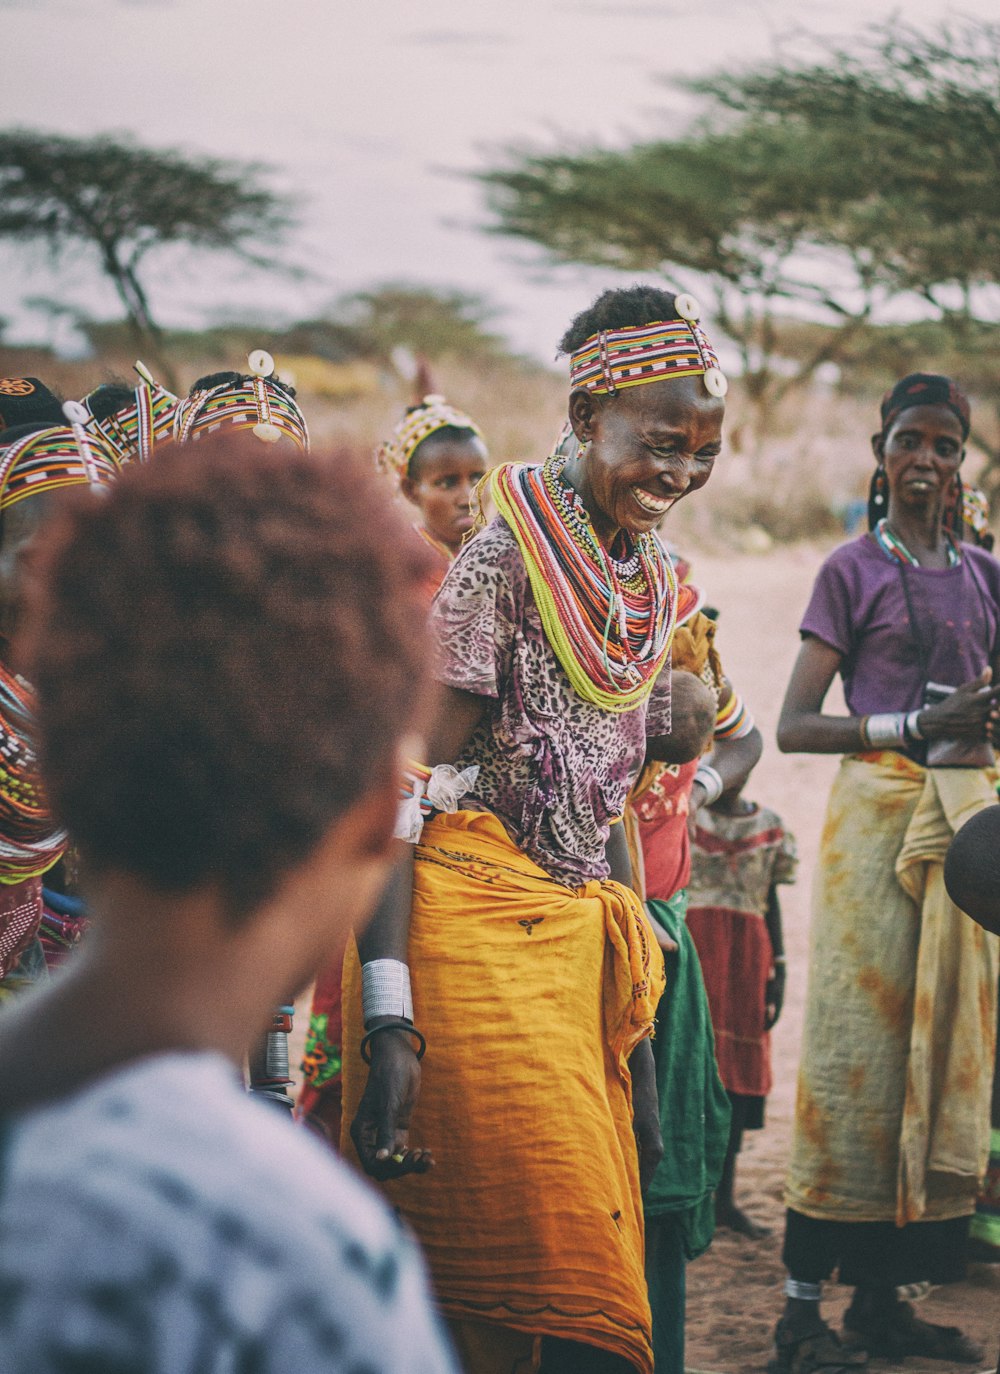 femme souriante dansant autour des gens de la tribu pendant la journée